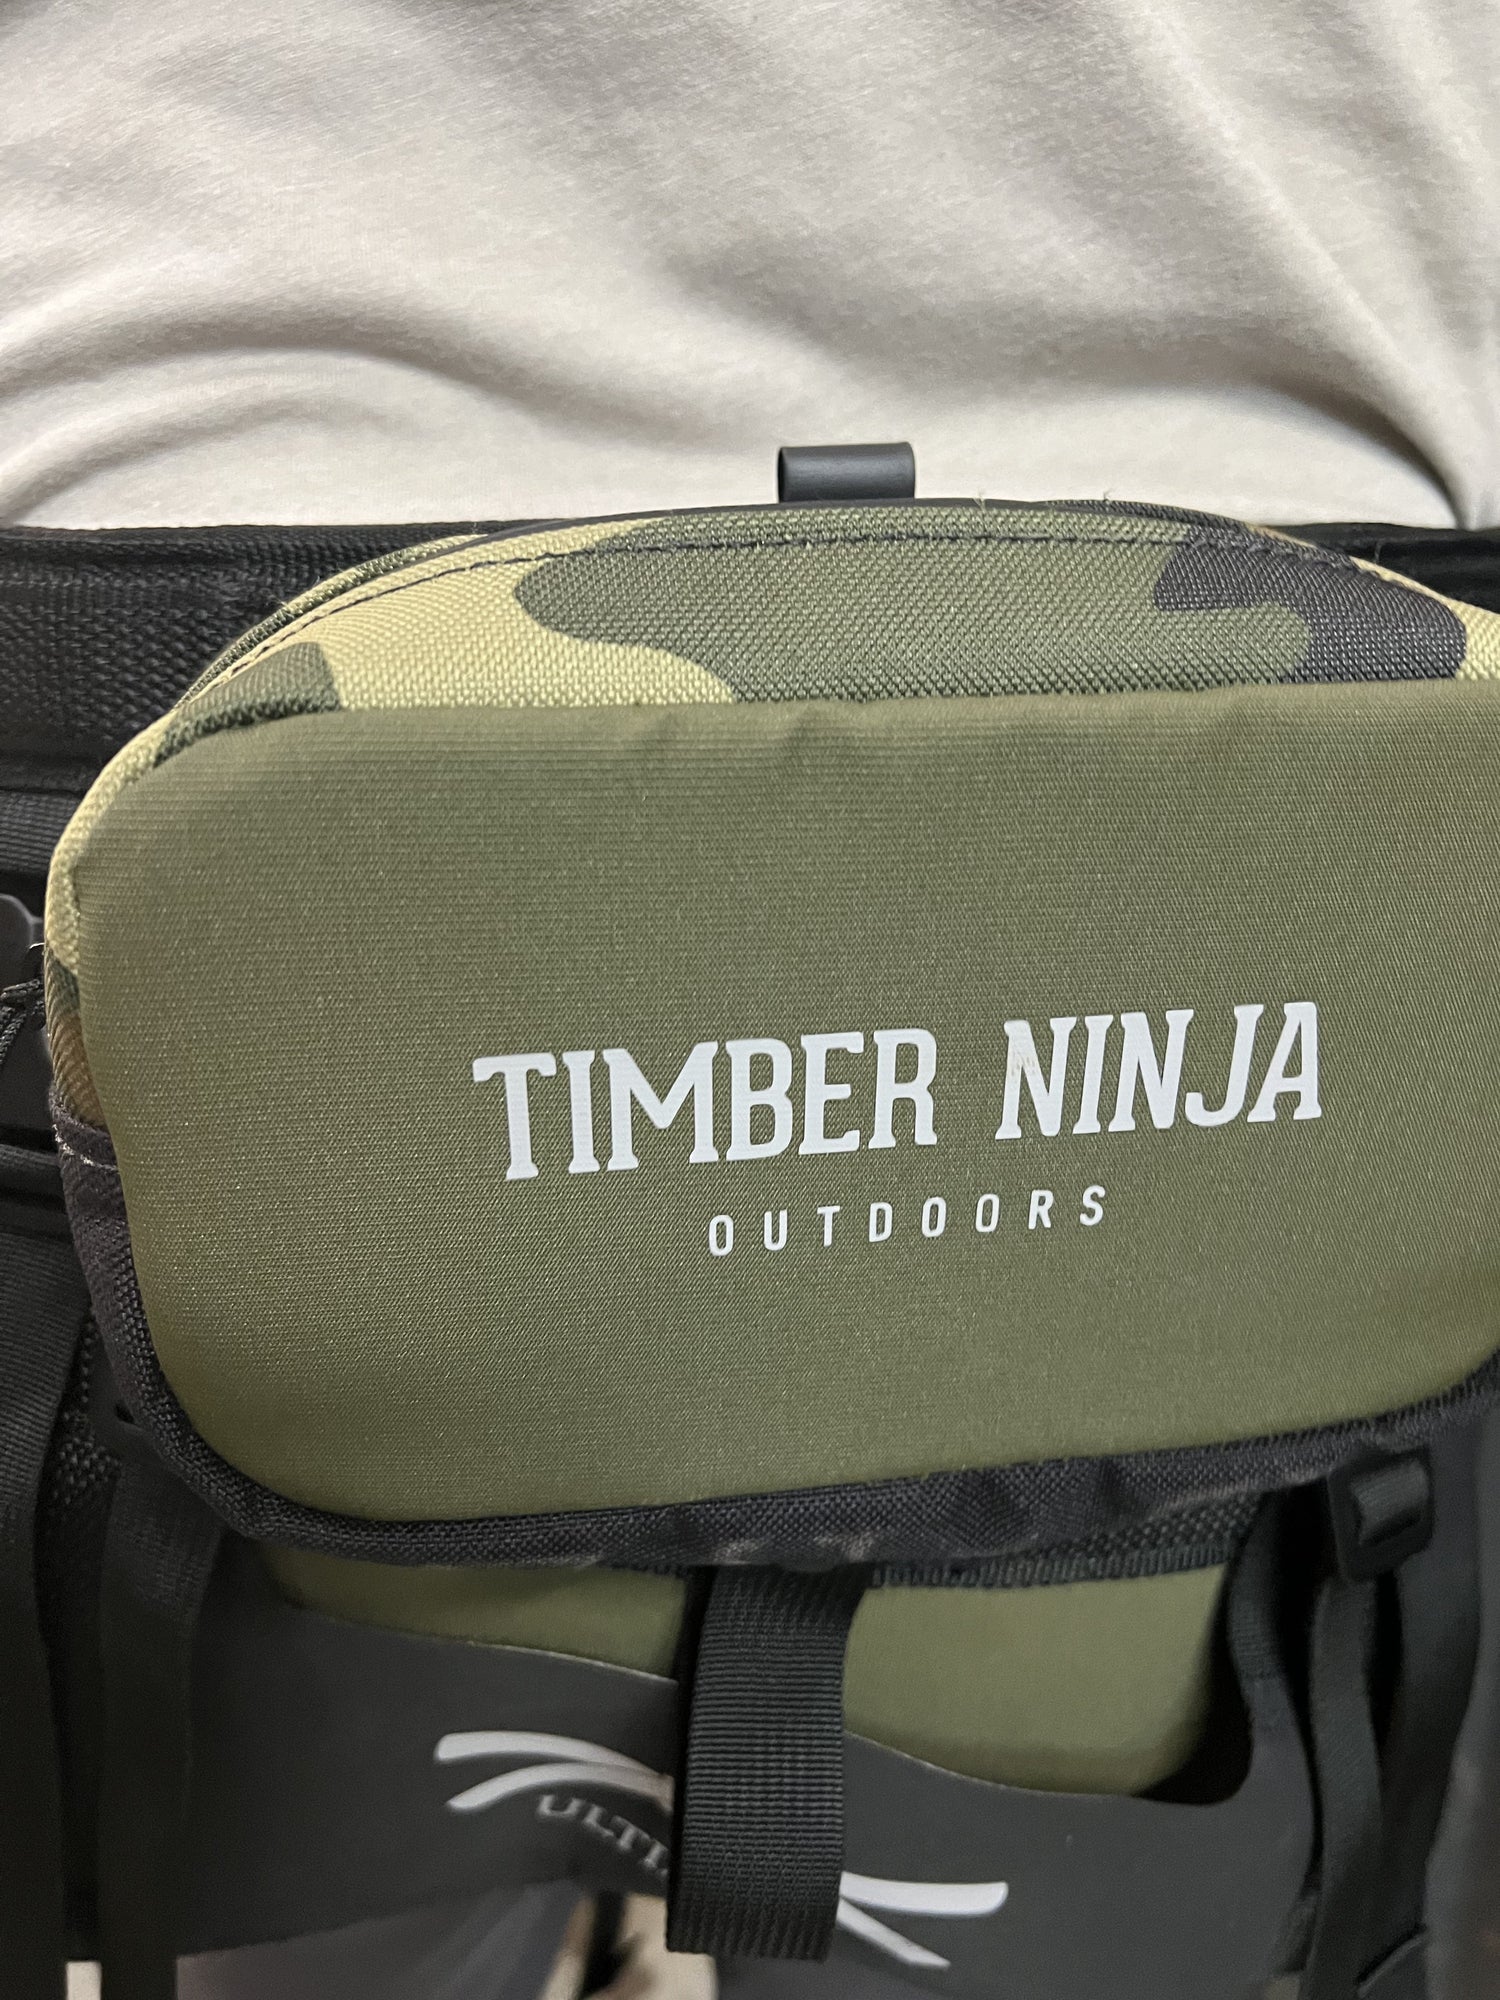 Timber Ninja Outdoors Premium Lumbar Saddle Bag in  by GOHUNT | Timber Ninja Outdoors - GOHUNT Shop